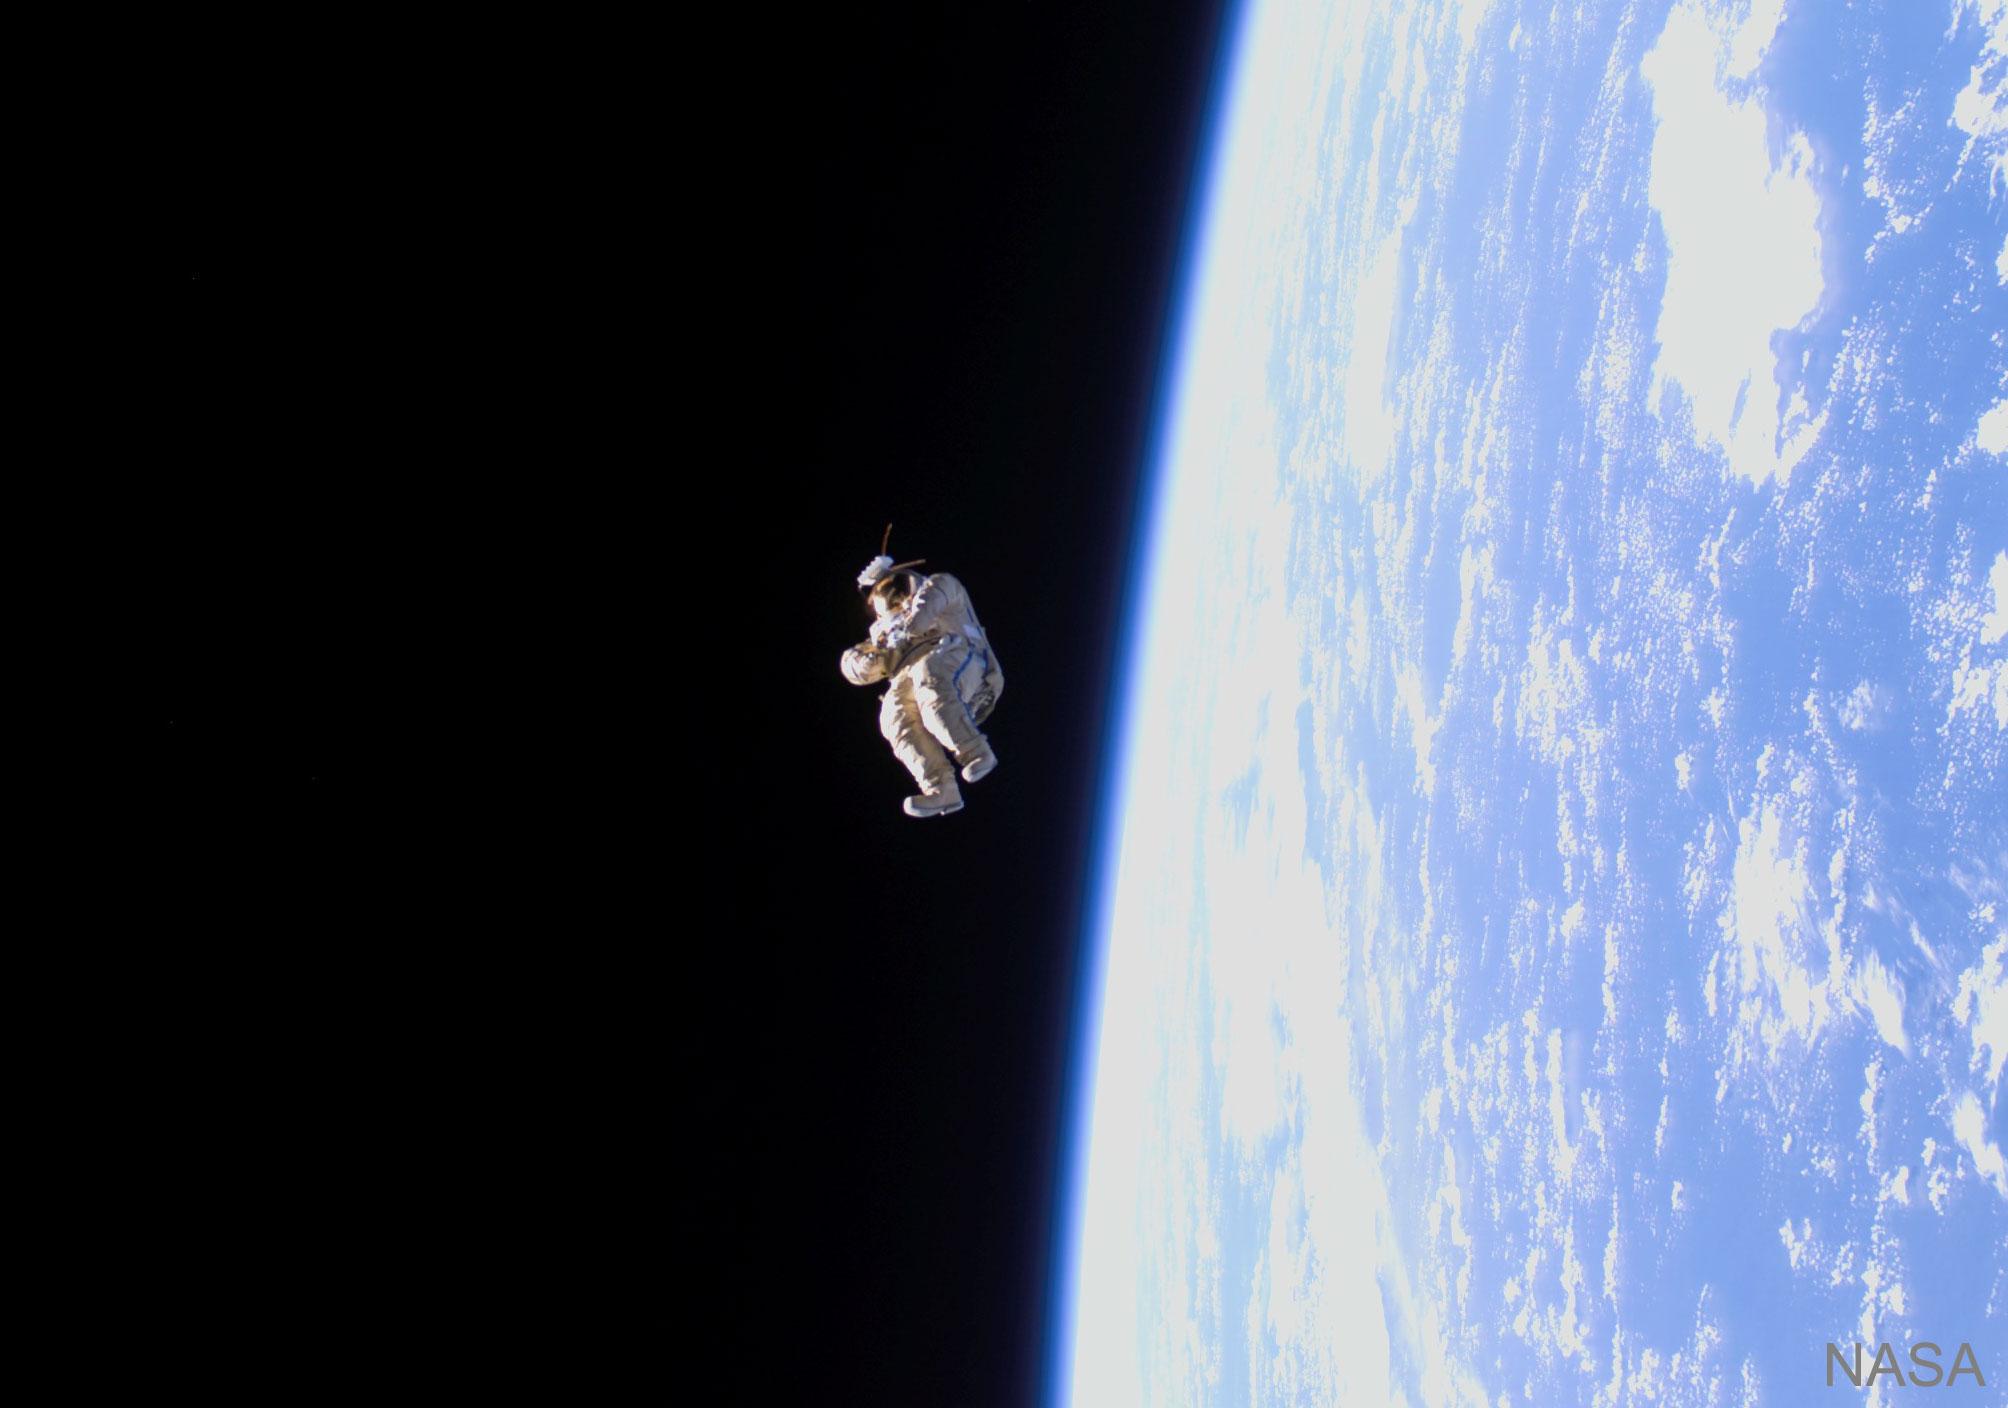 بدلة فضاء تطوف لوحدها بعيداً في منتصف الصورة ومن خلفها الفضاء الحالك ويظهر في نصف الصورة الأيمن كوكب الأرض الأزرق بغيومه البيضاء